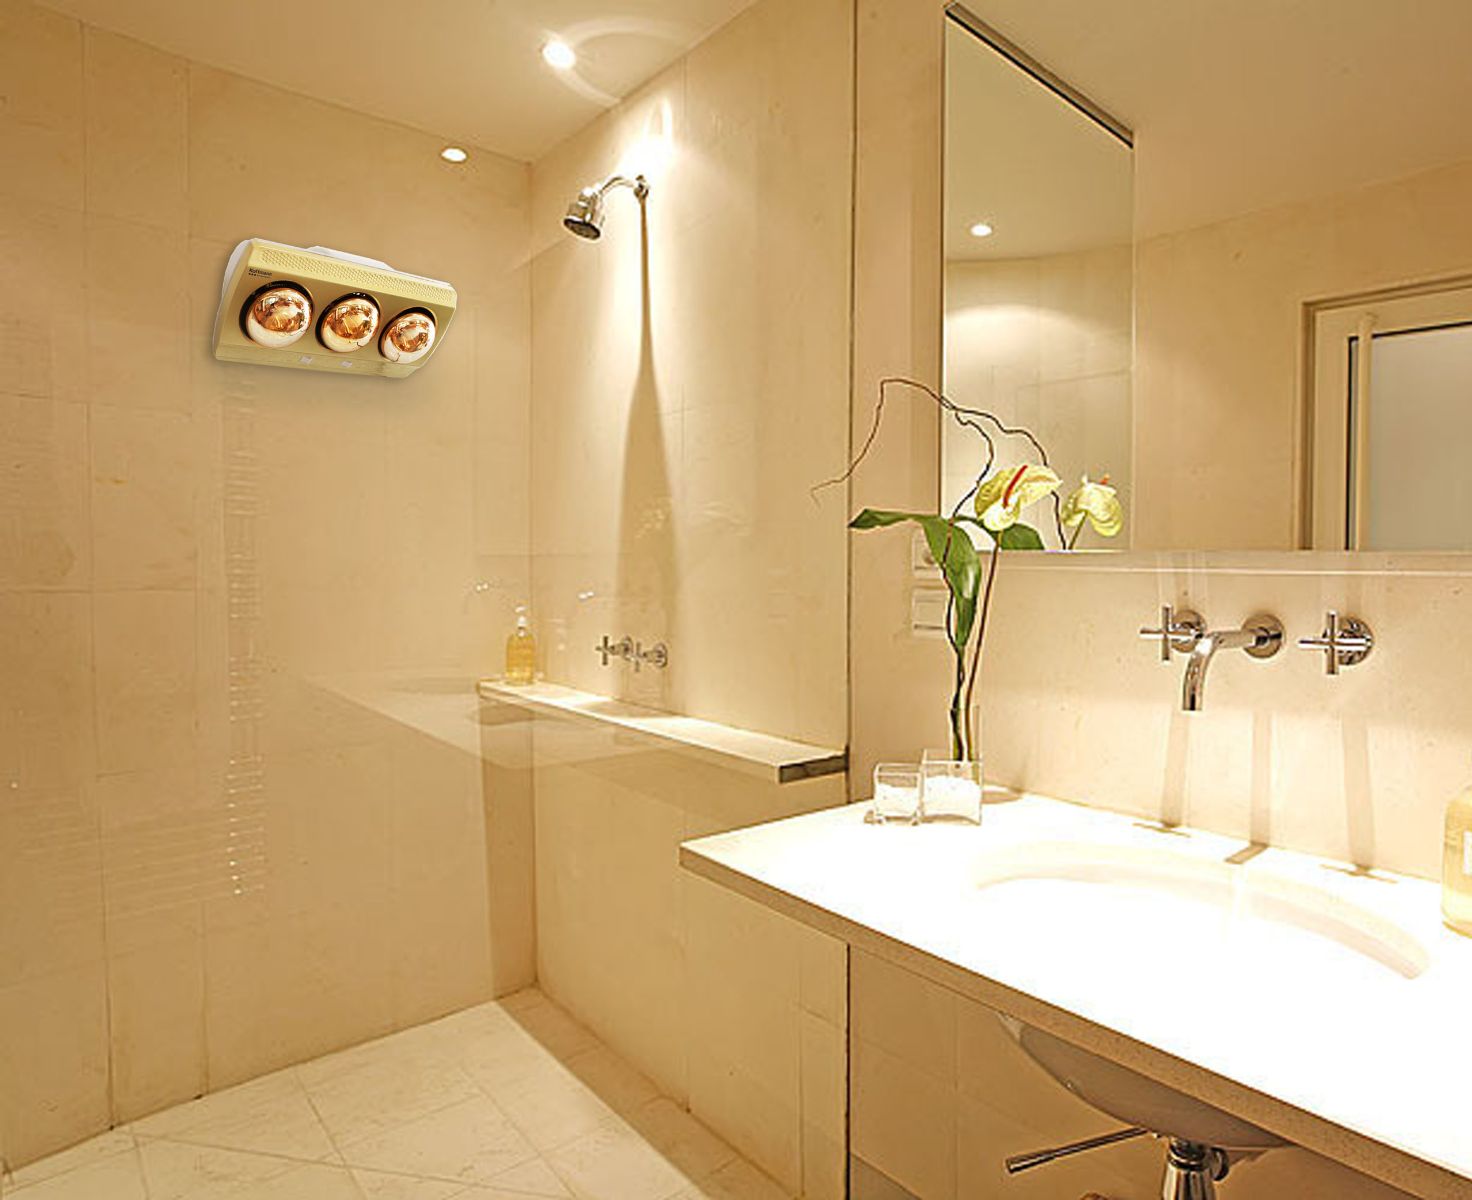 Sử dụng đèn sưởi trong nhà tắm vừa chiếu sáng lại vừa làm ấm rất tốt, giúp tiết kiệm điện năng